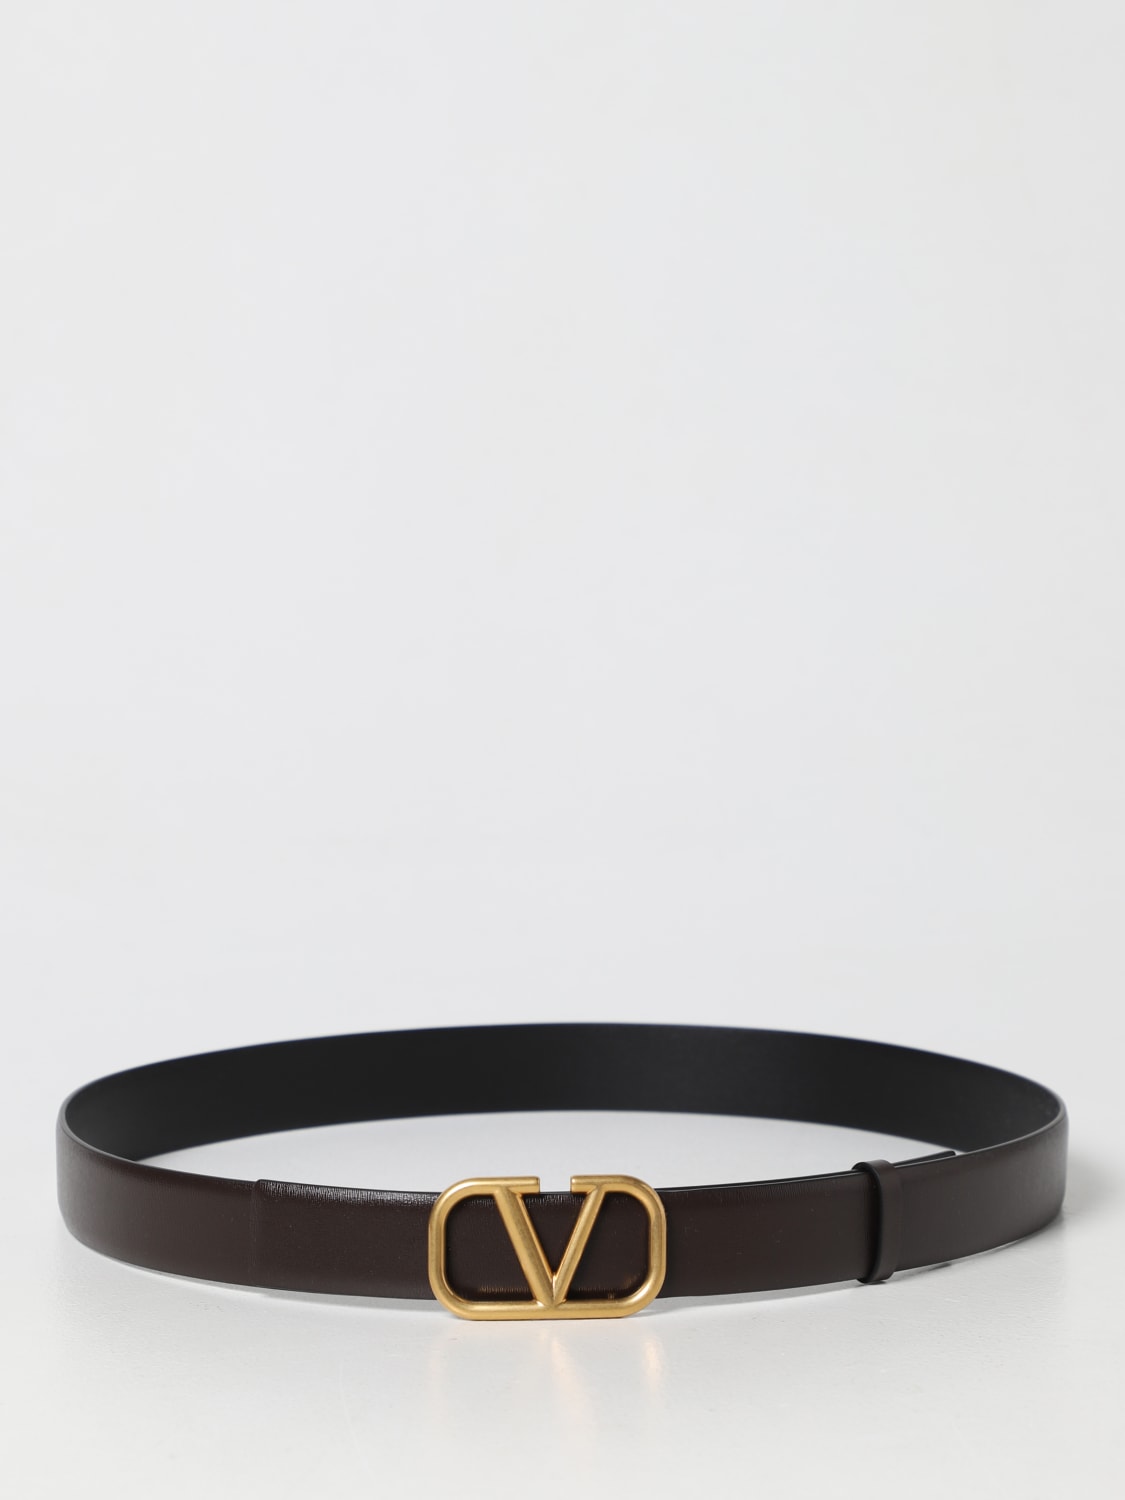 V Logo Leather Belt in Brown - Valentino Garavani